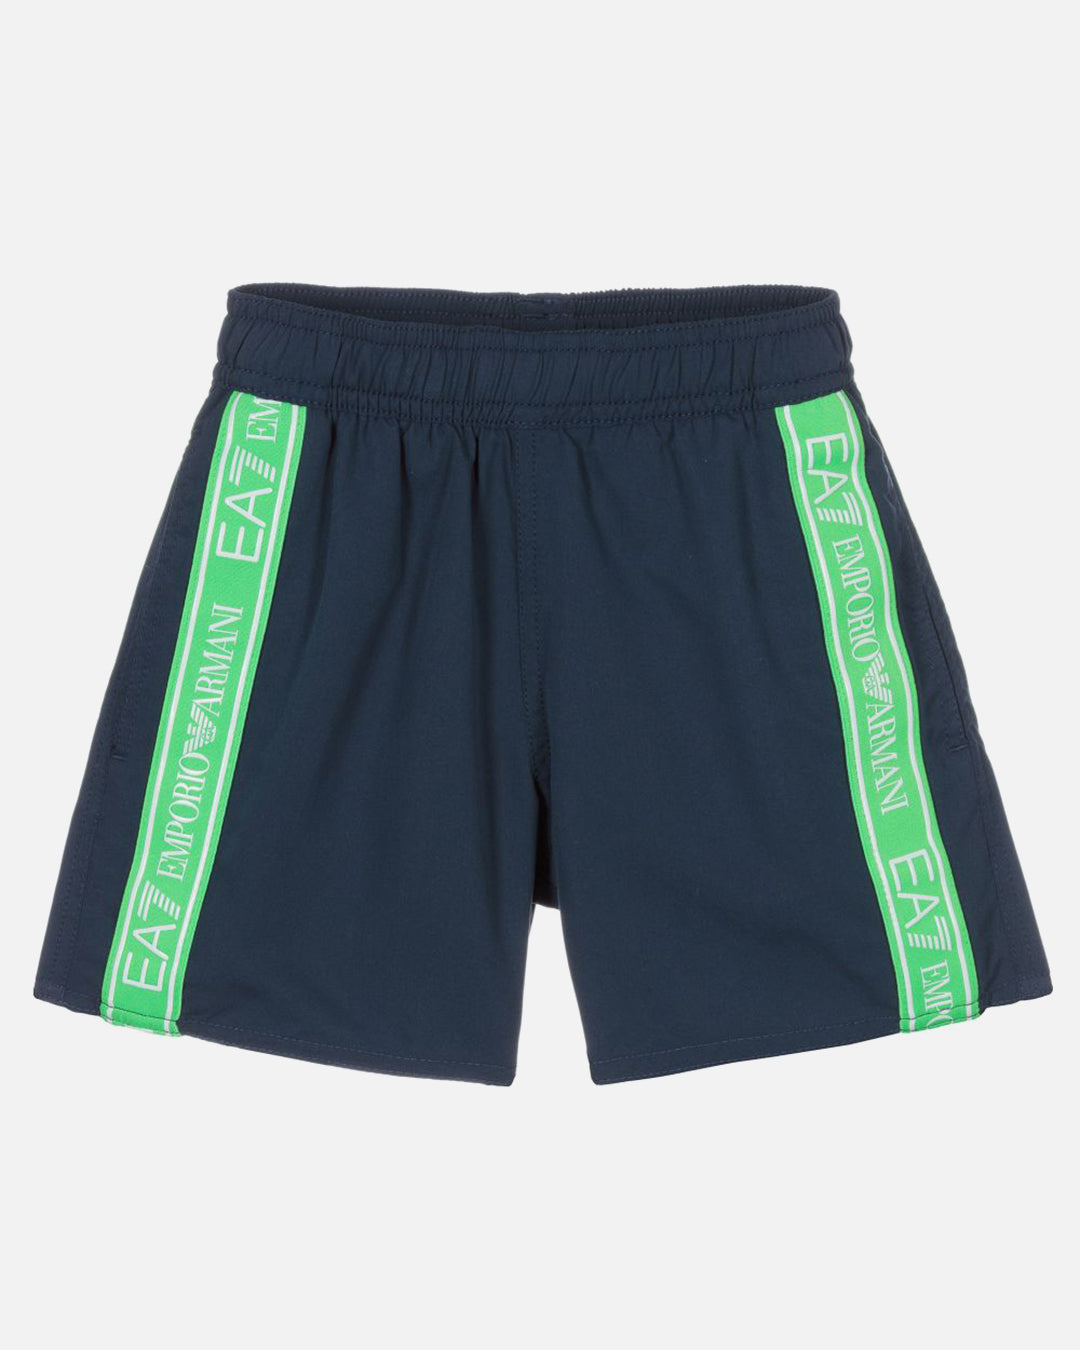 Emporio Armani EA7 swim shorts - Blue/Green